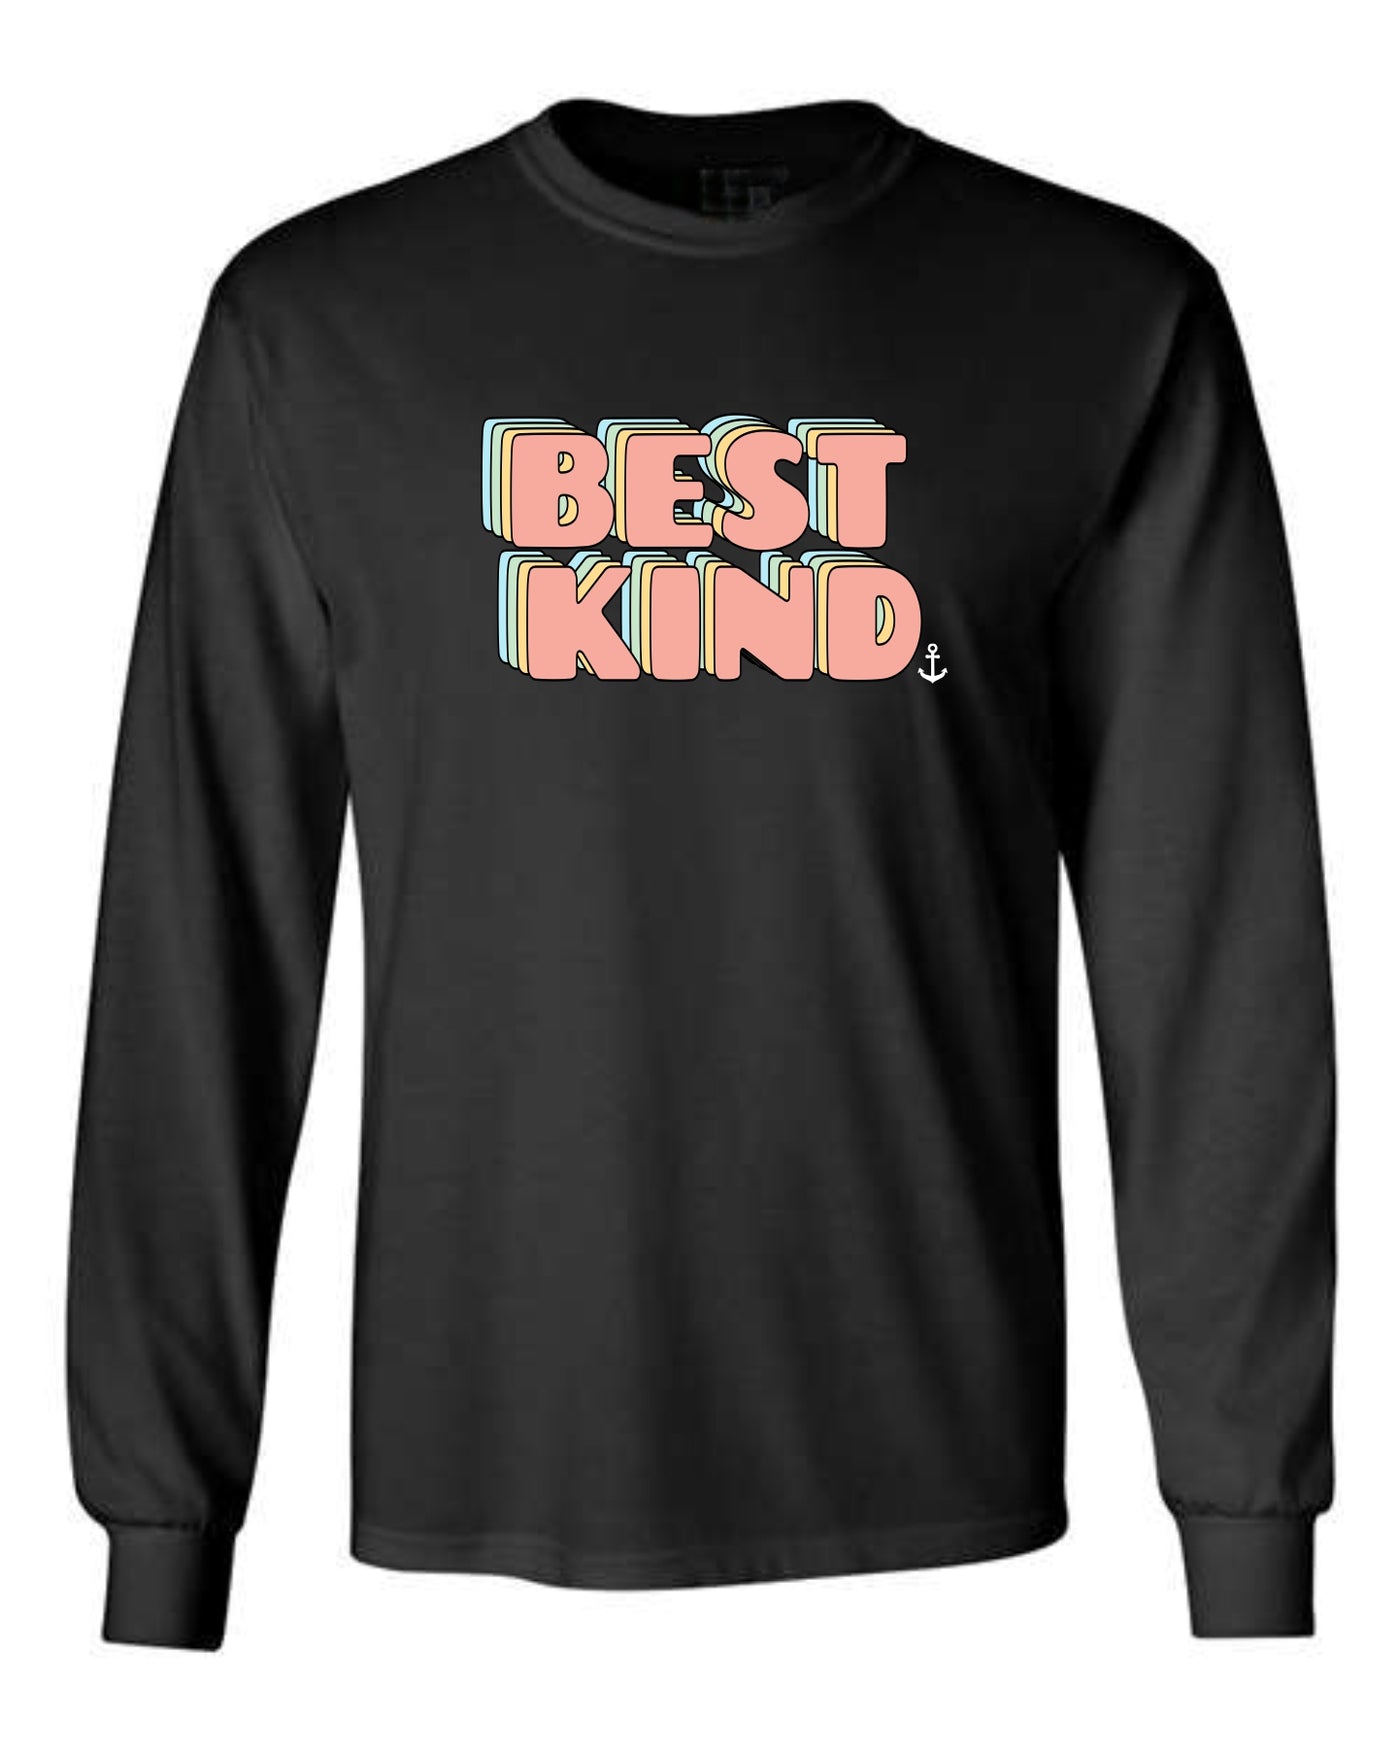 "Best Kind" Groovy Unisex Long Sleeve Shirt